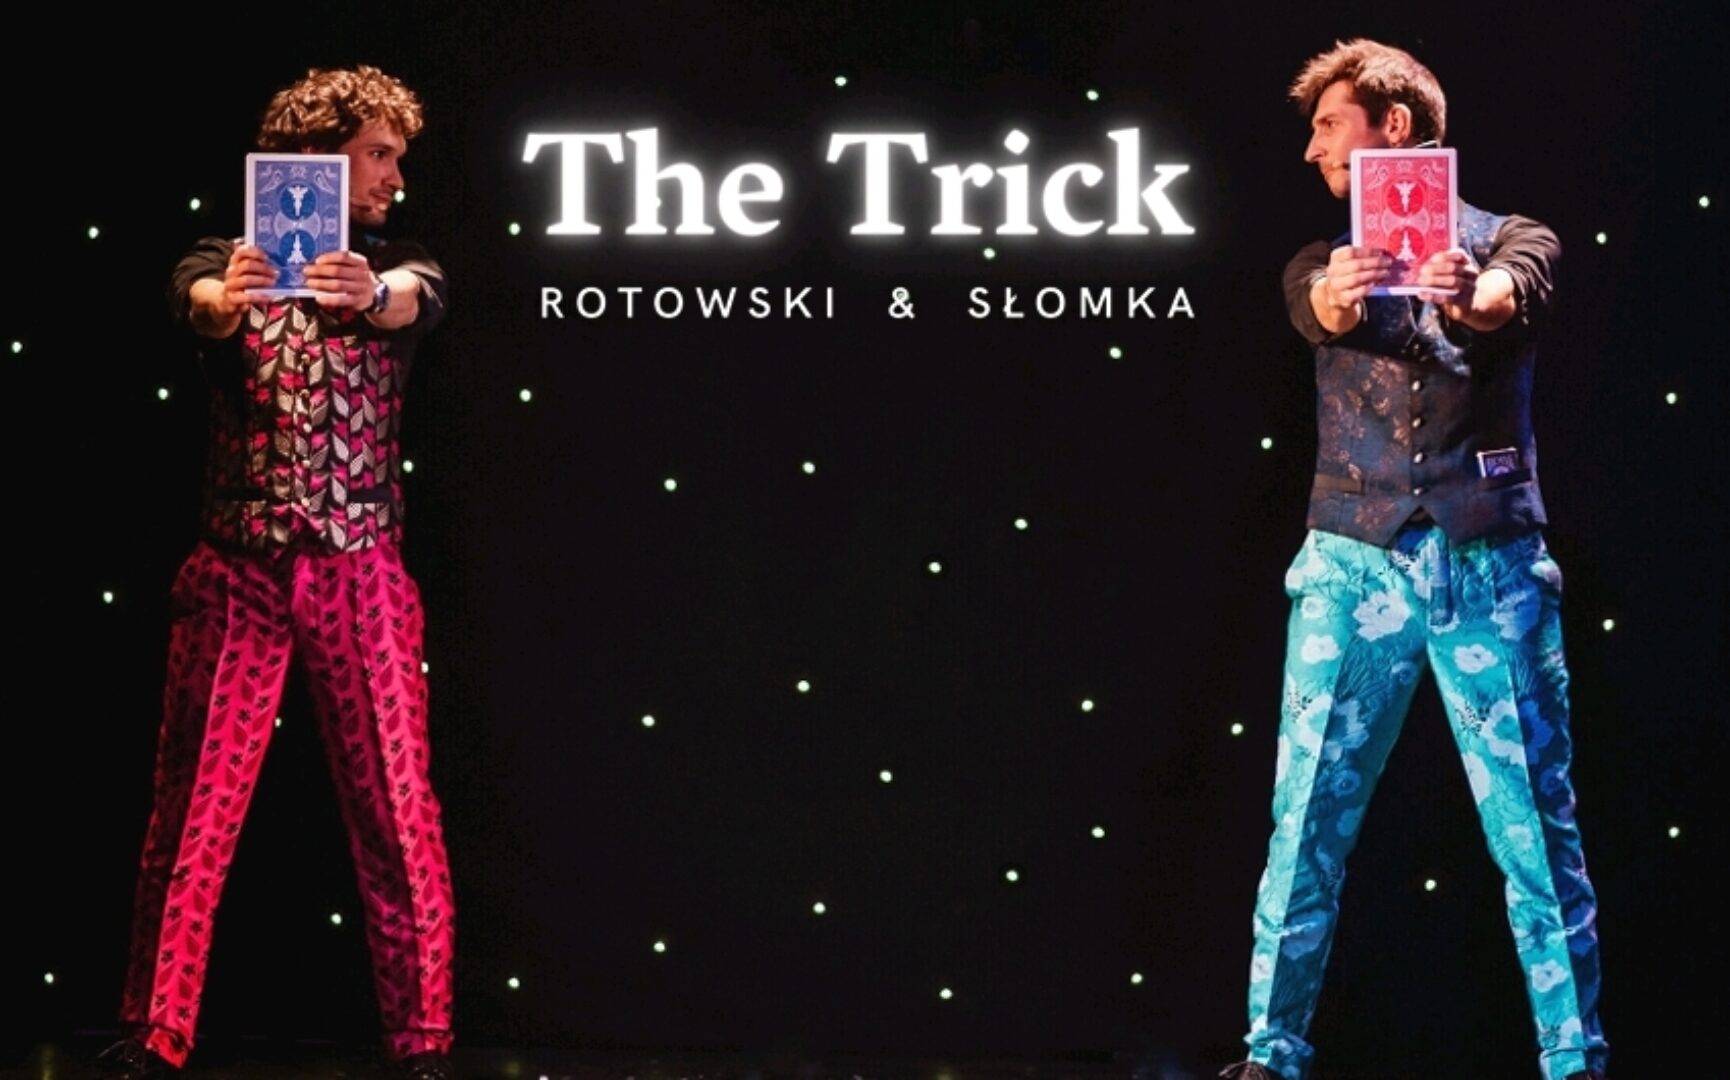 The Trick: Rotowski & Słomka